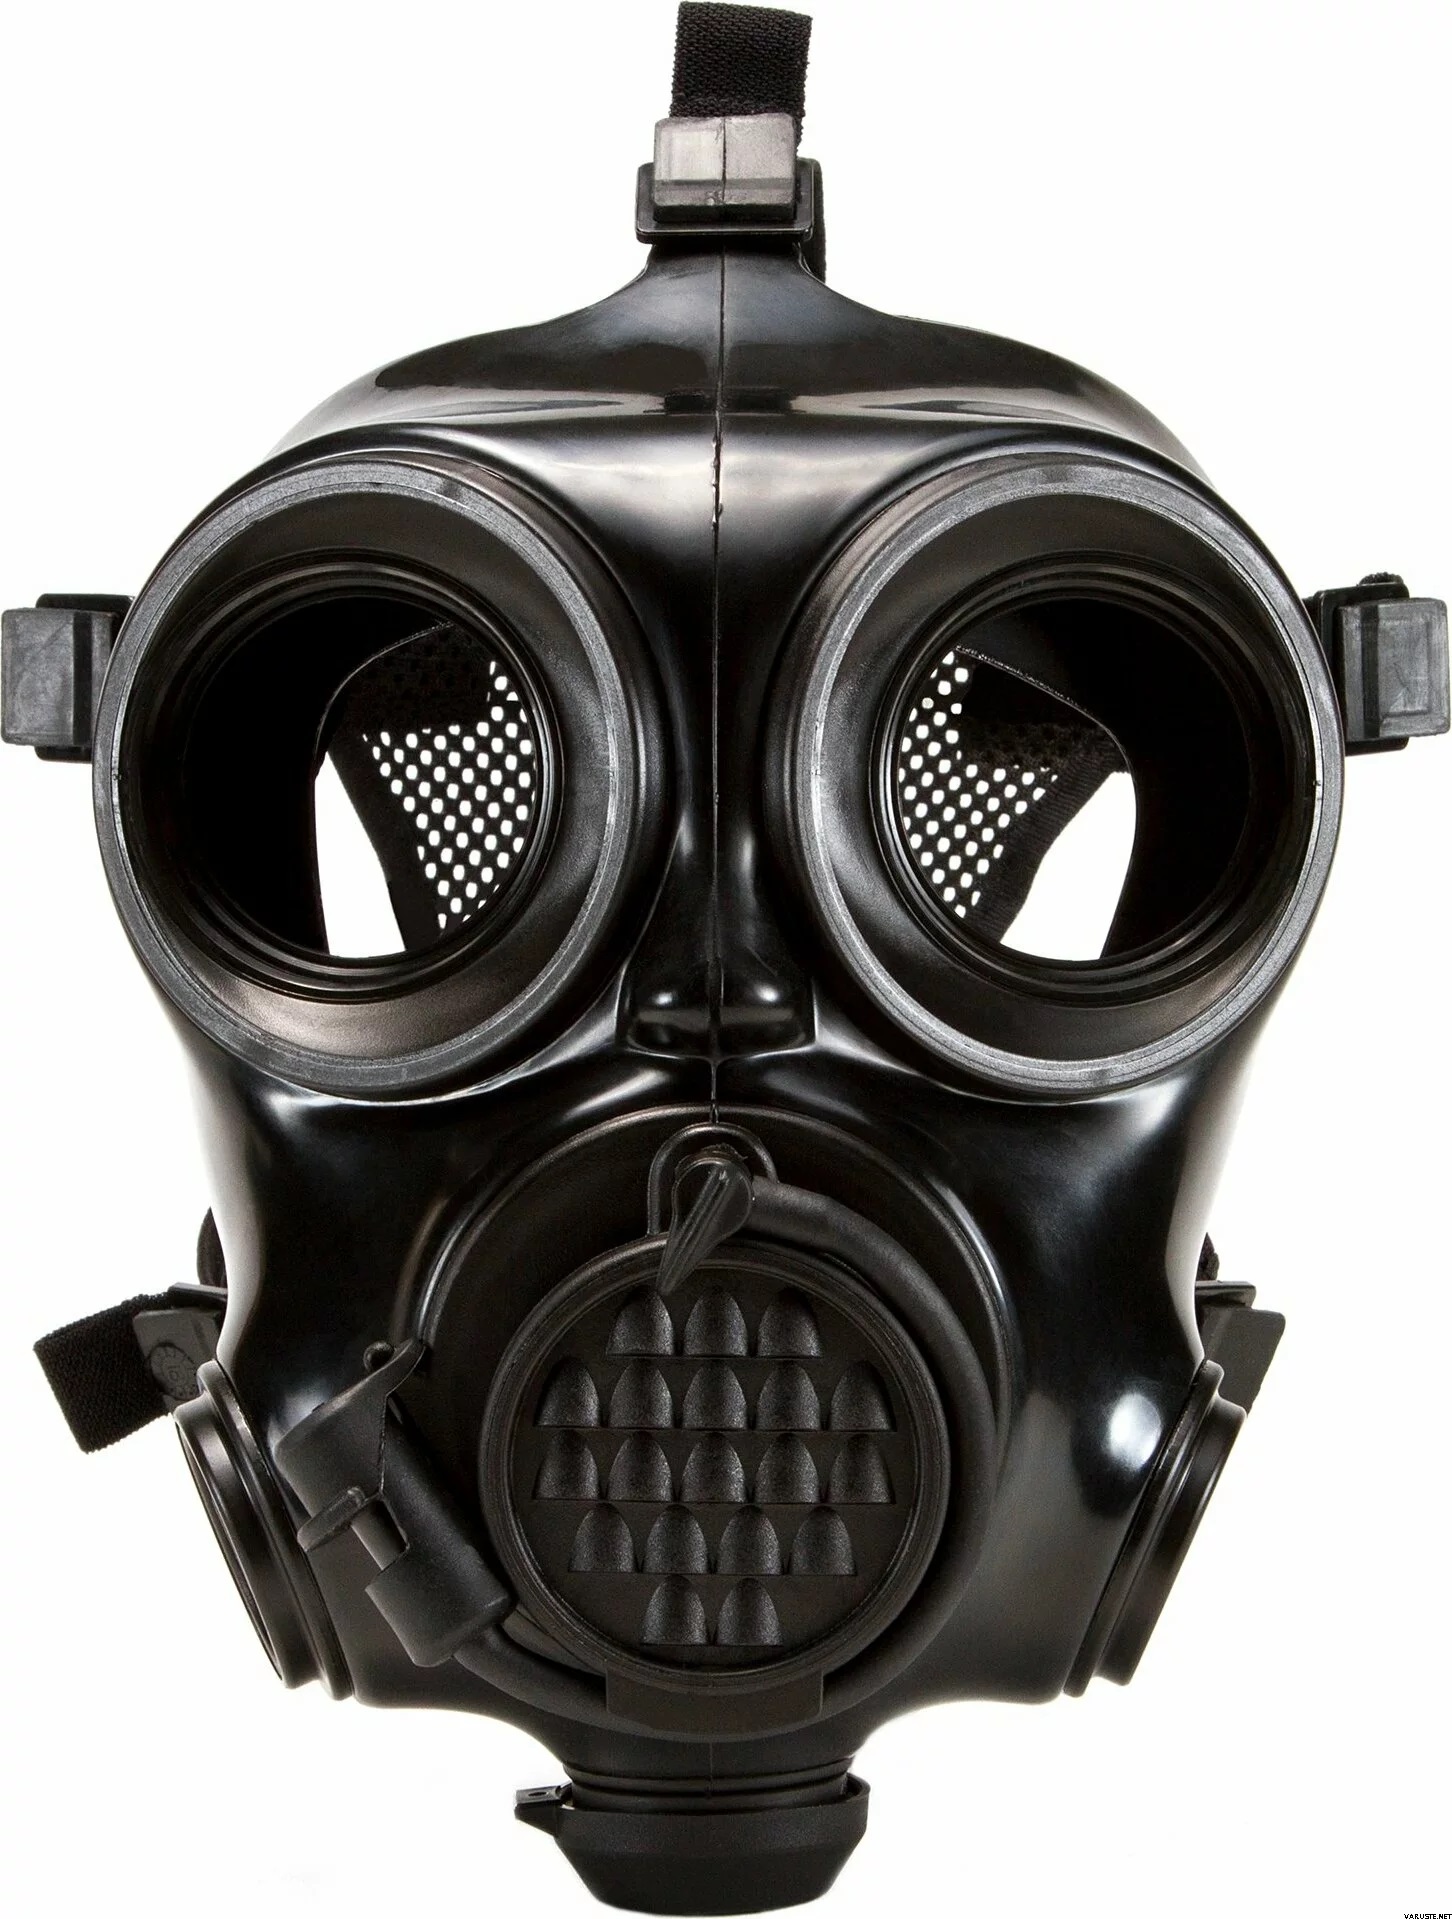 MF11B Masque À Gaz Chimique Masque À Gaz Militaire 87 De Formule Dorigine  Biologique Radioactivité Chimique Masque À Gaz Respiratoire Du 39,58 €